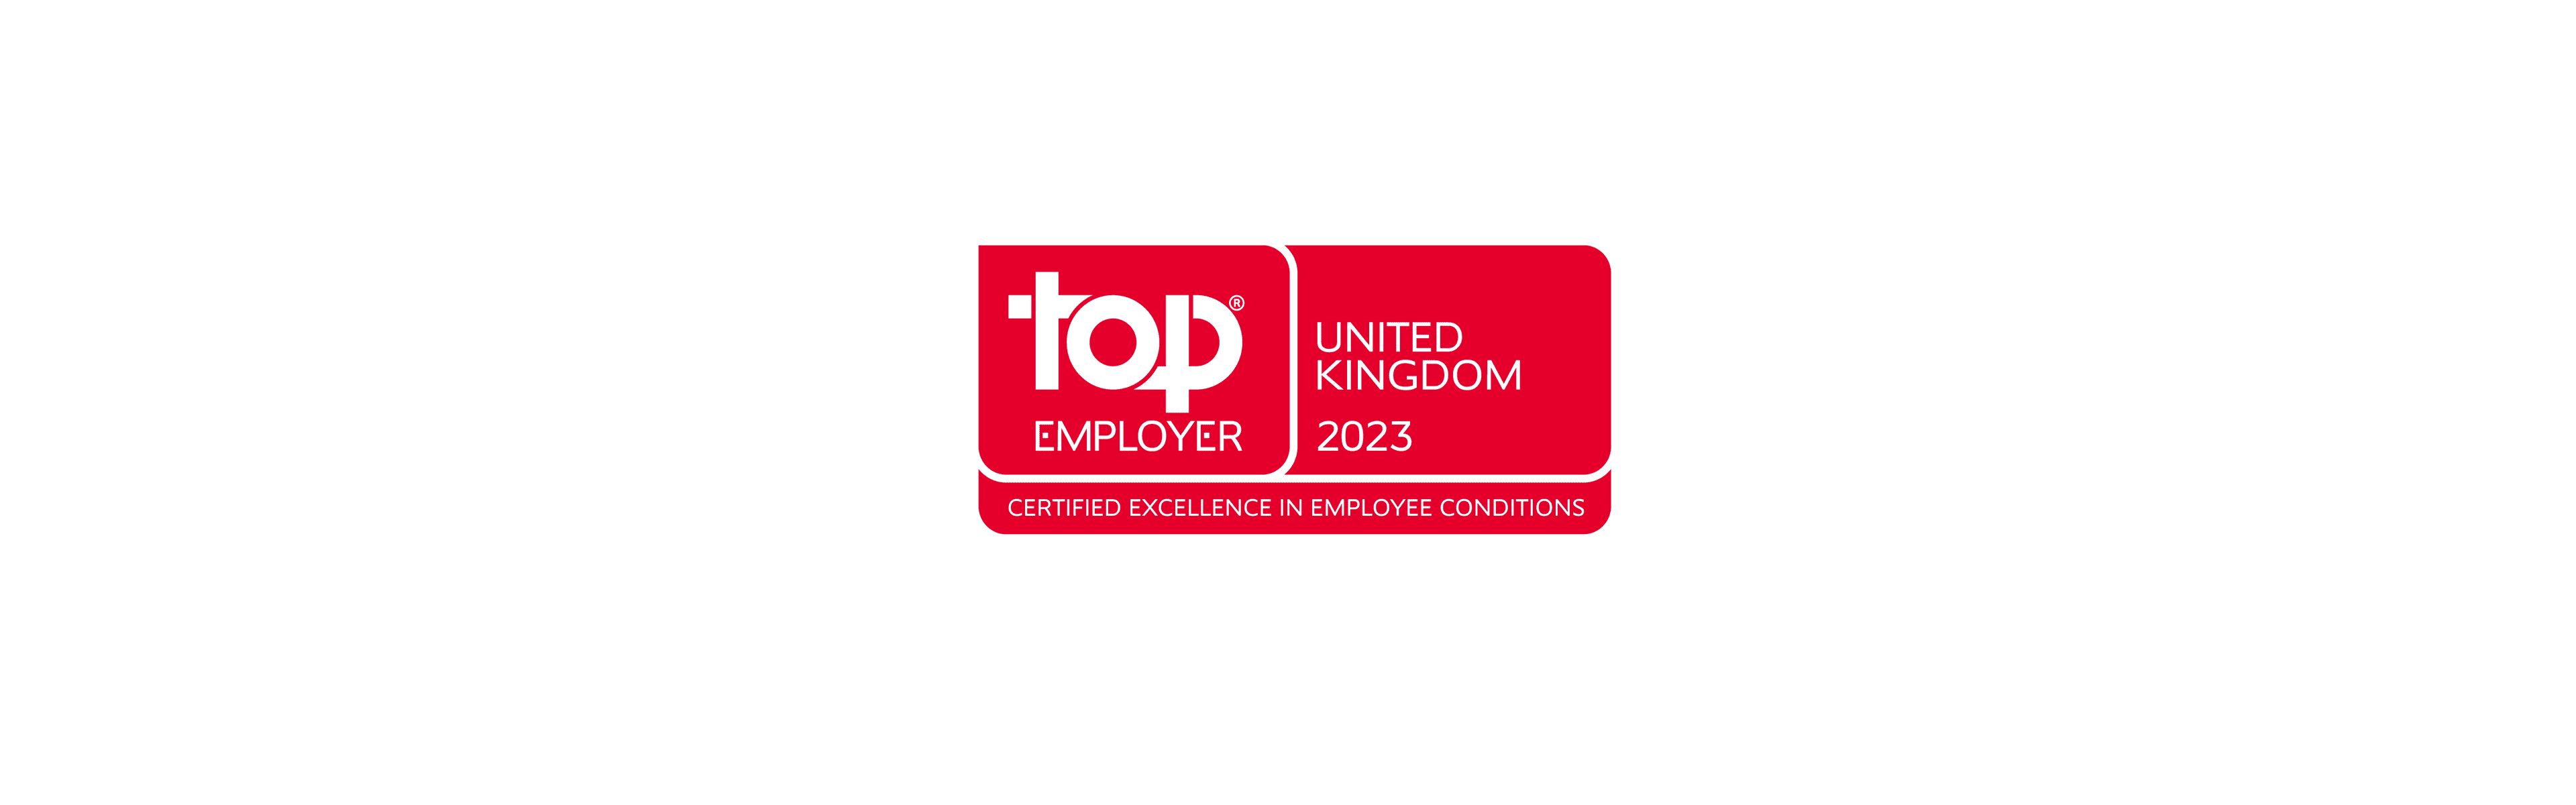 Top Employer 2023 award logo